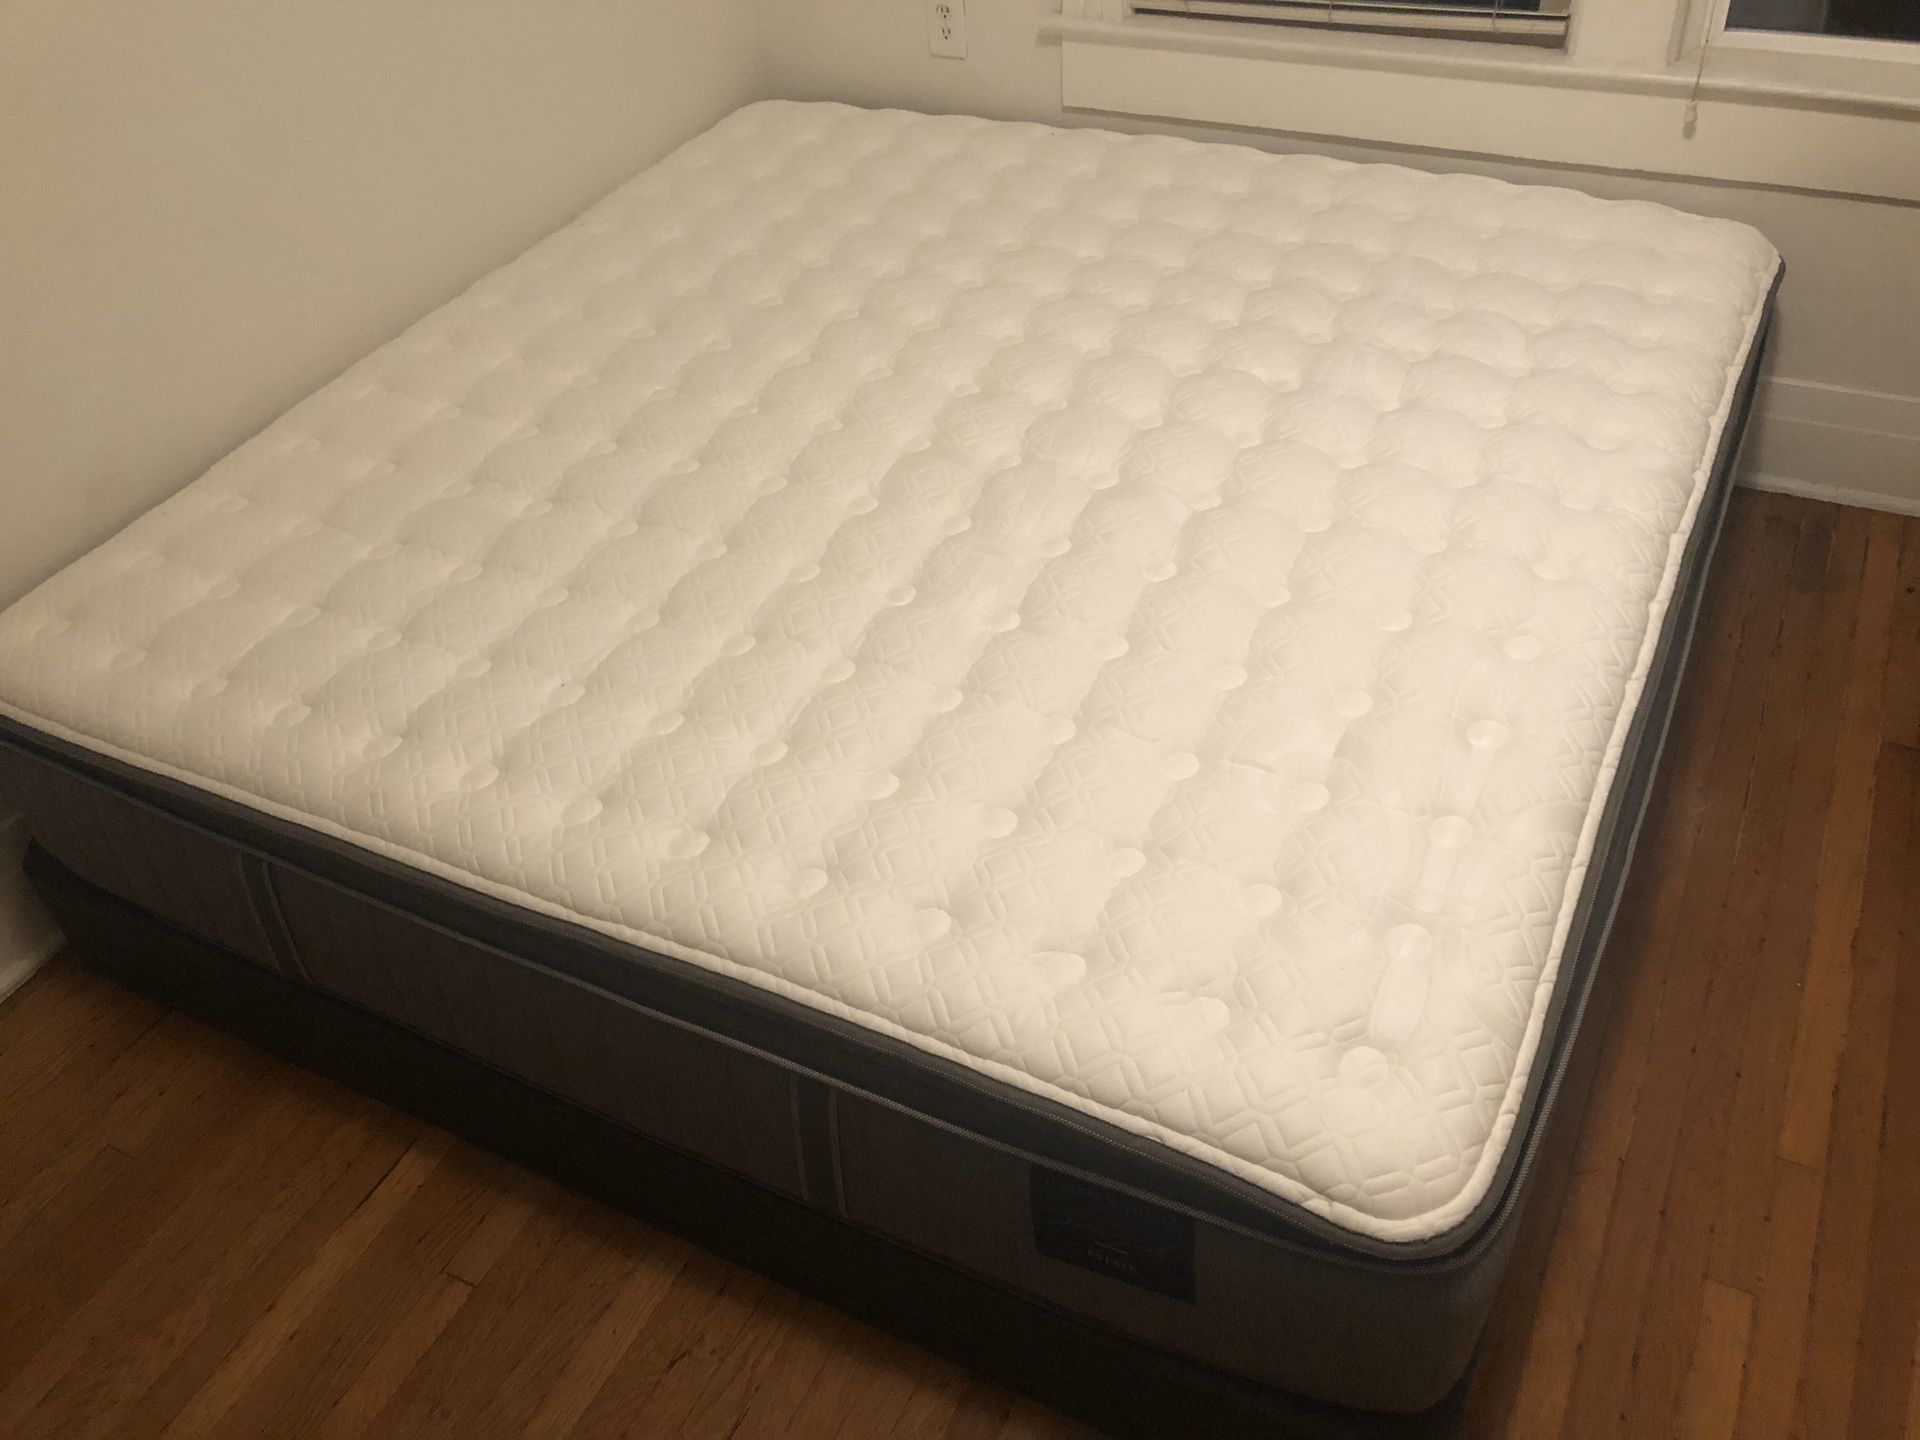 King size mattress + box spring